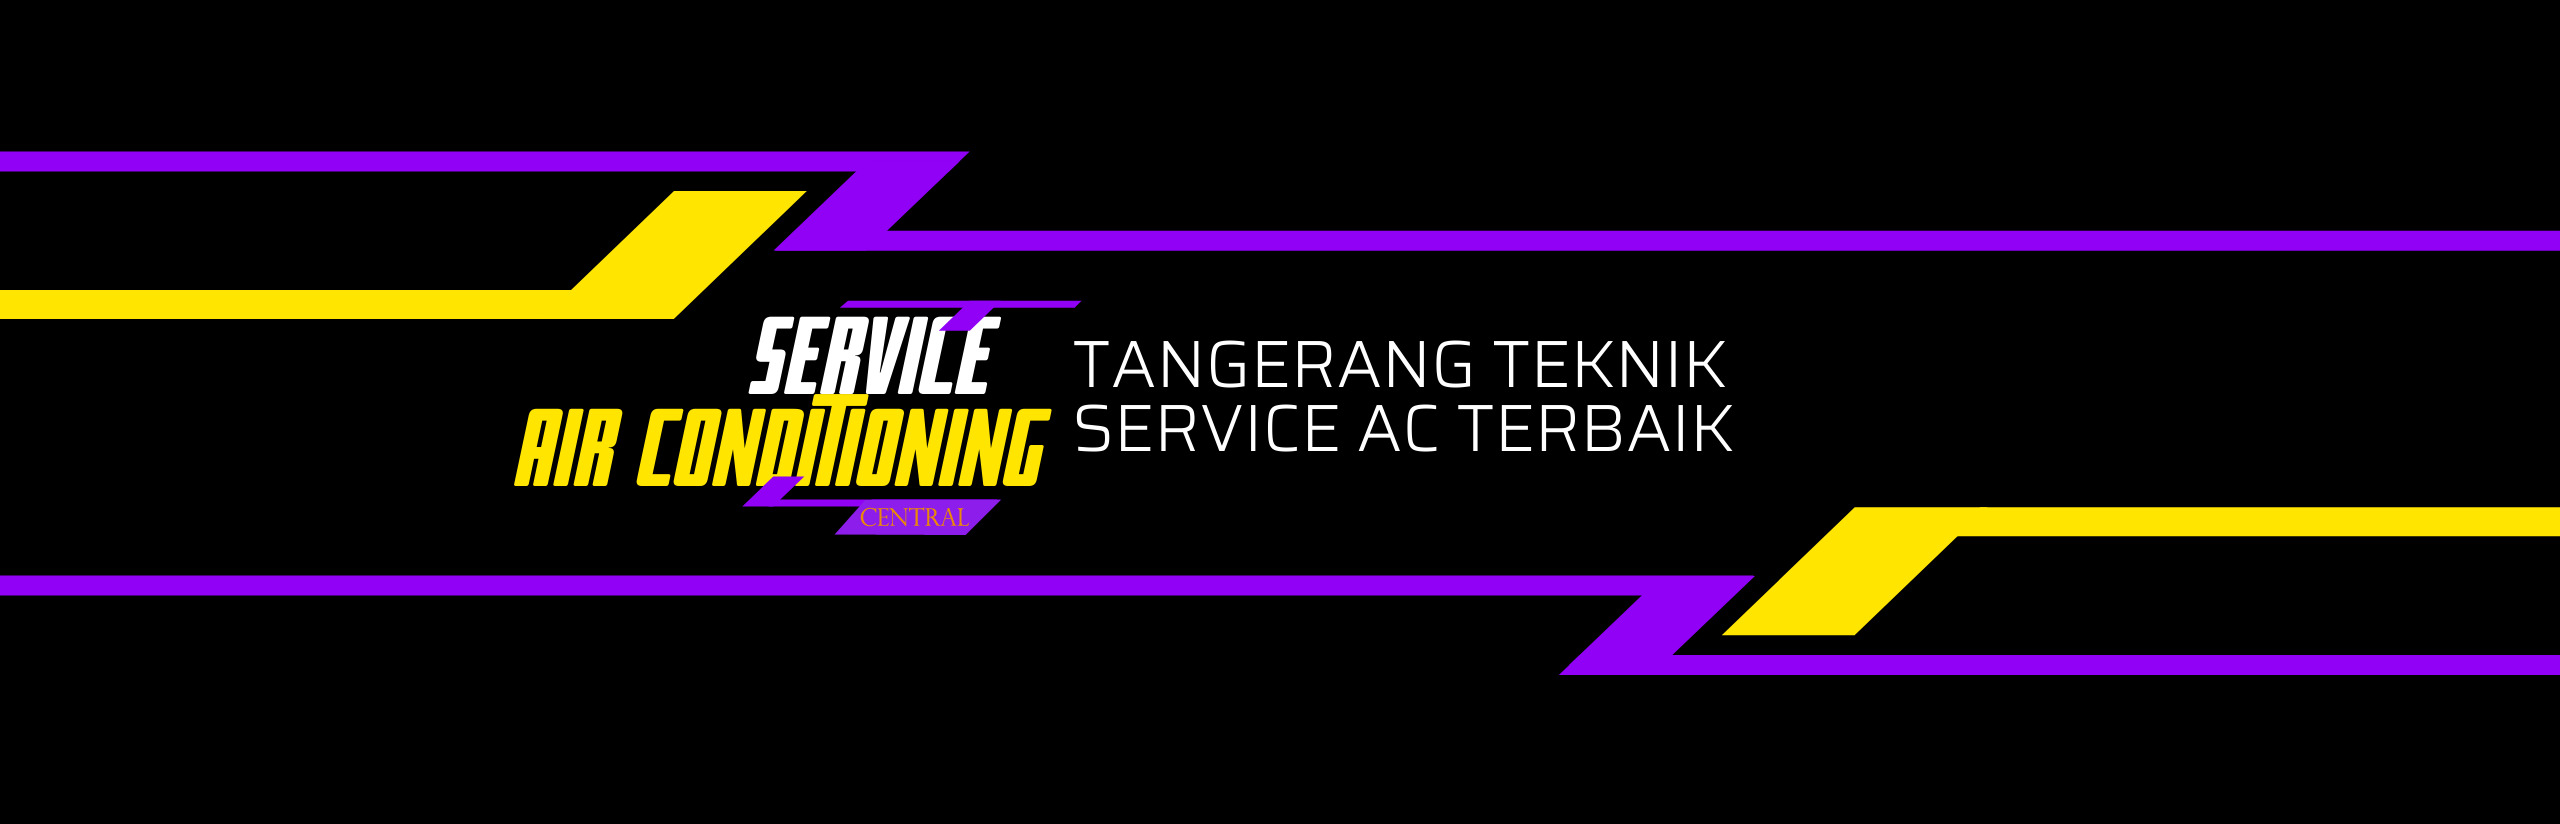 Service AC Jakarta, Bogor, Depok, Tangerang, Bekasi